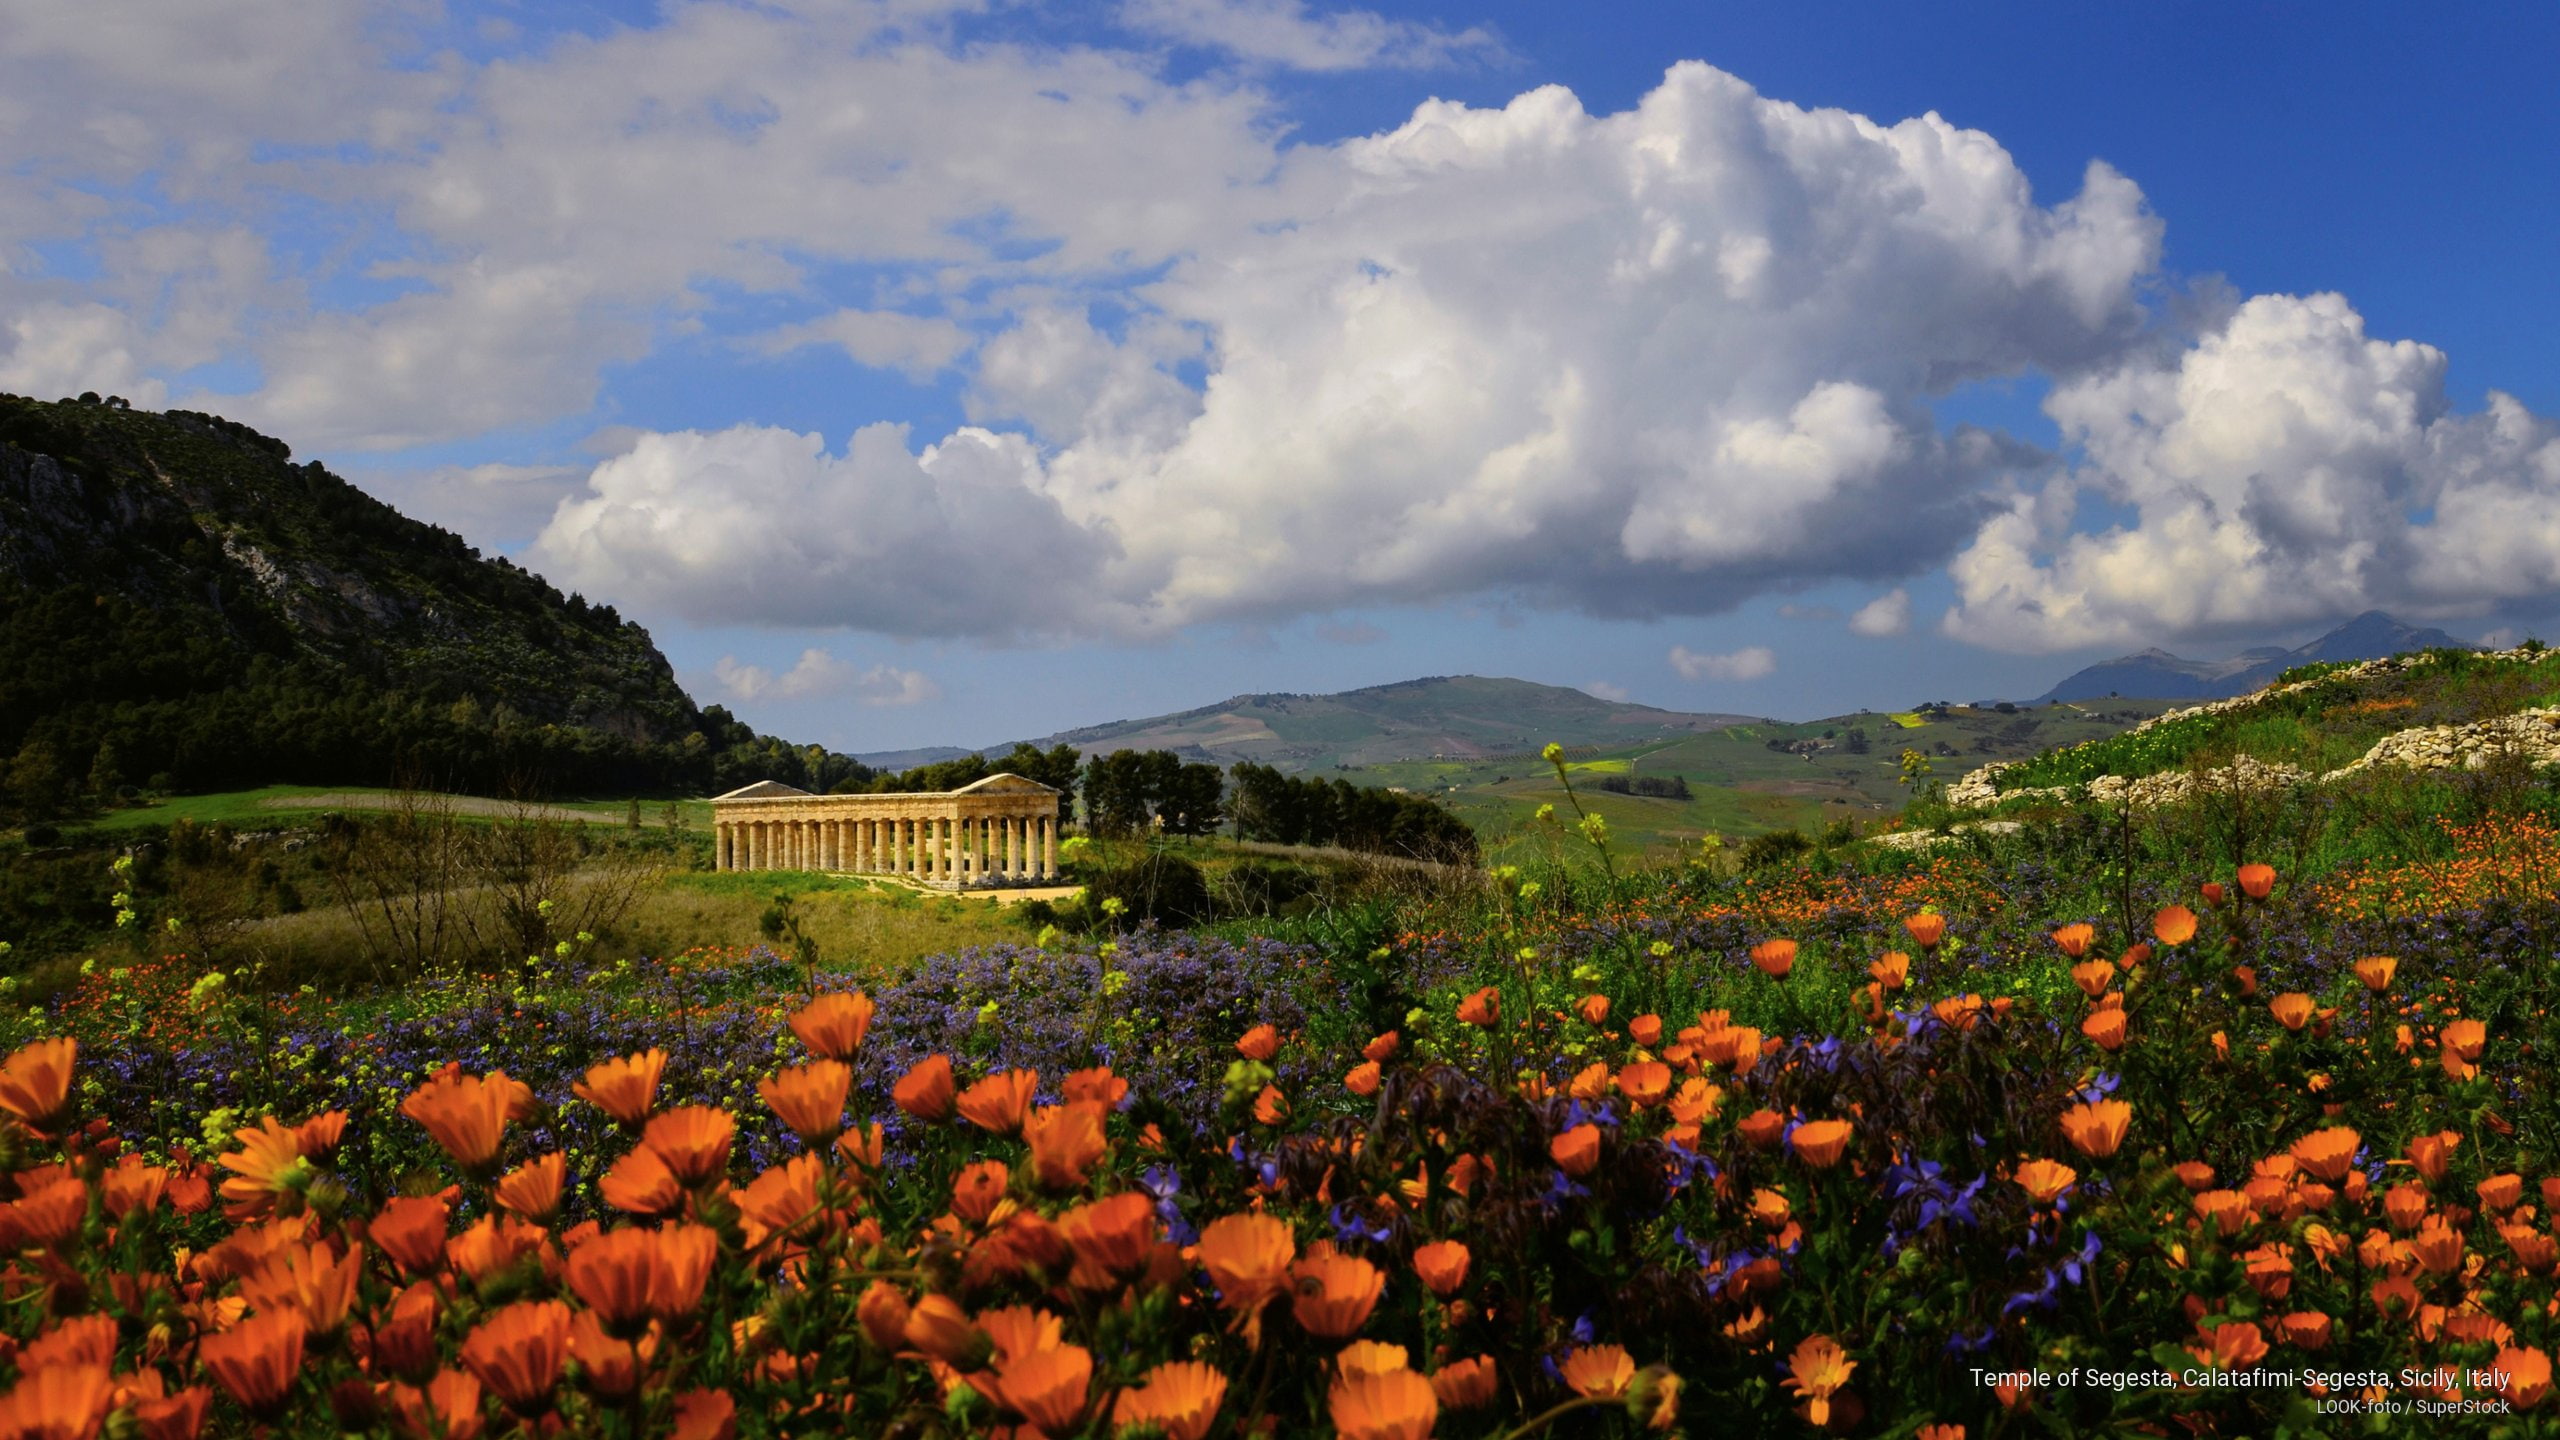 Temple of Segesta, Calatafimi-Segesta, Sicily, Italy, Spring/Summer